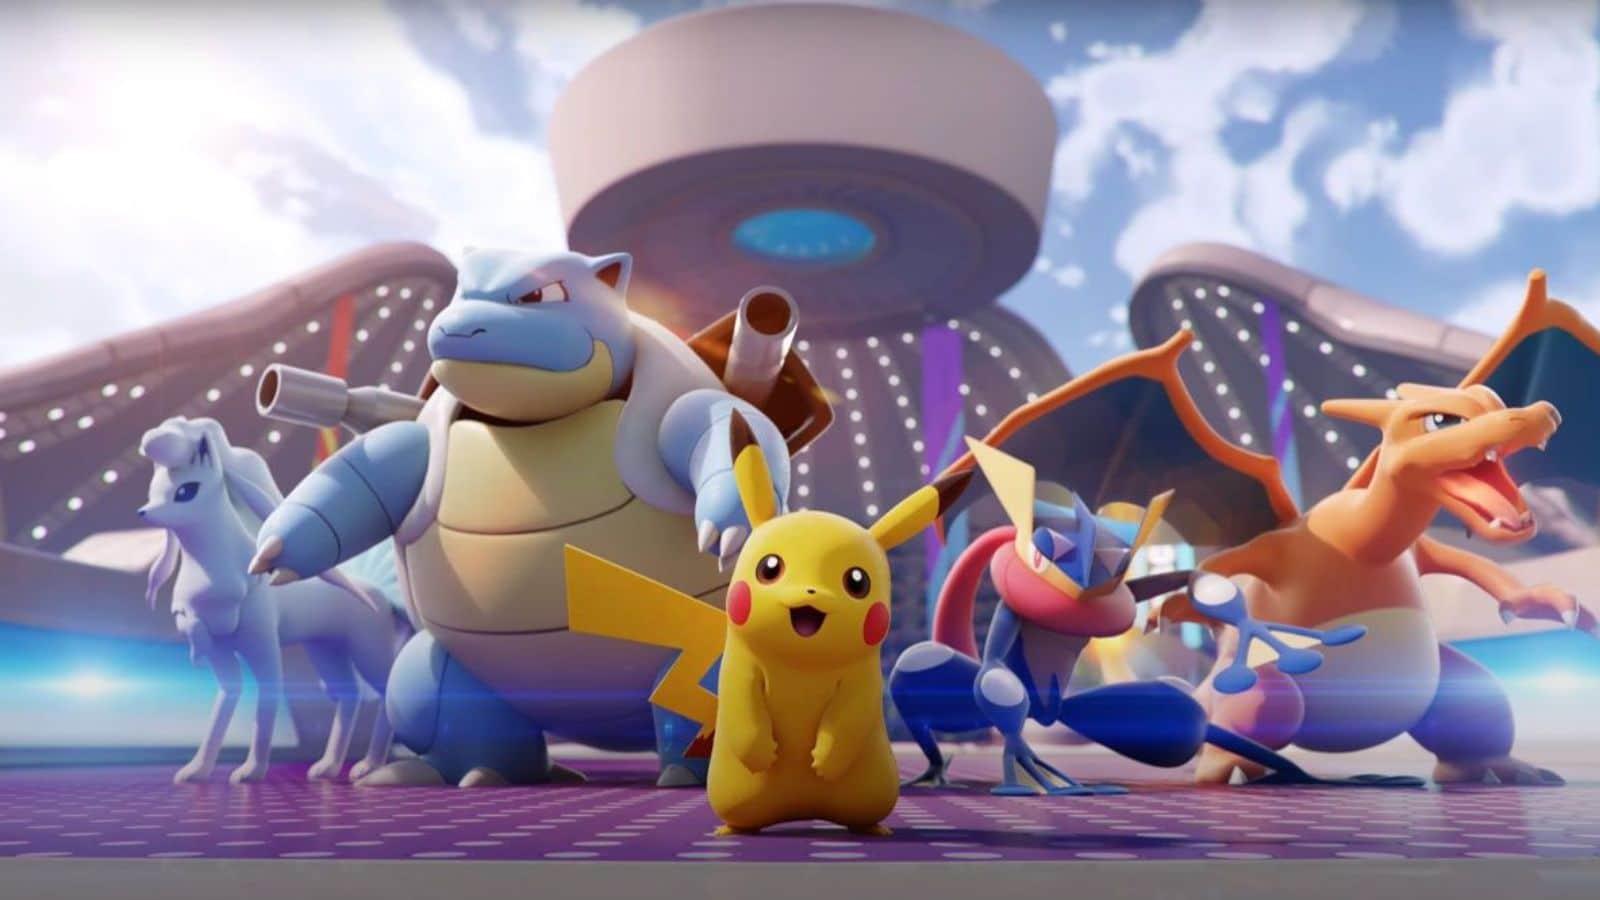 Pokemon Unite Update Will Add Mew, Dodrio, and Scizor - GameRevolution